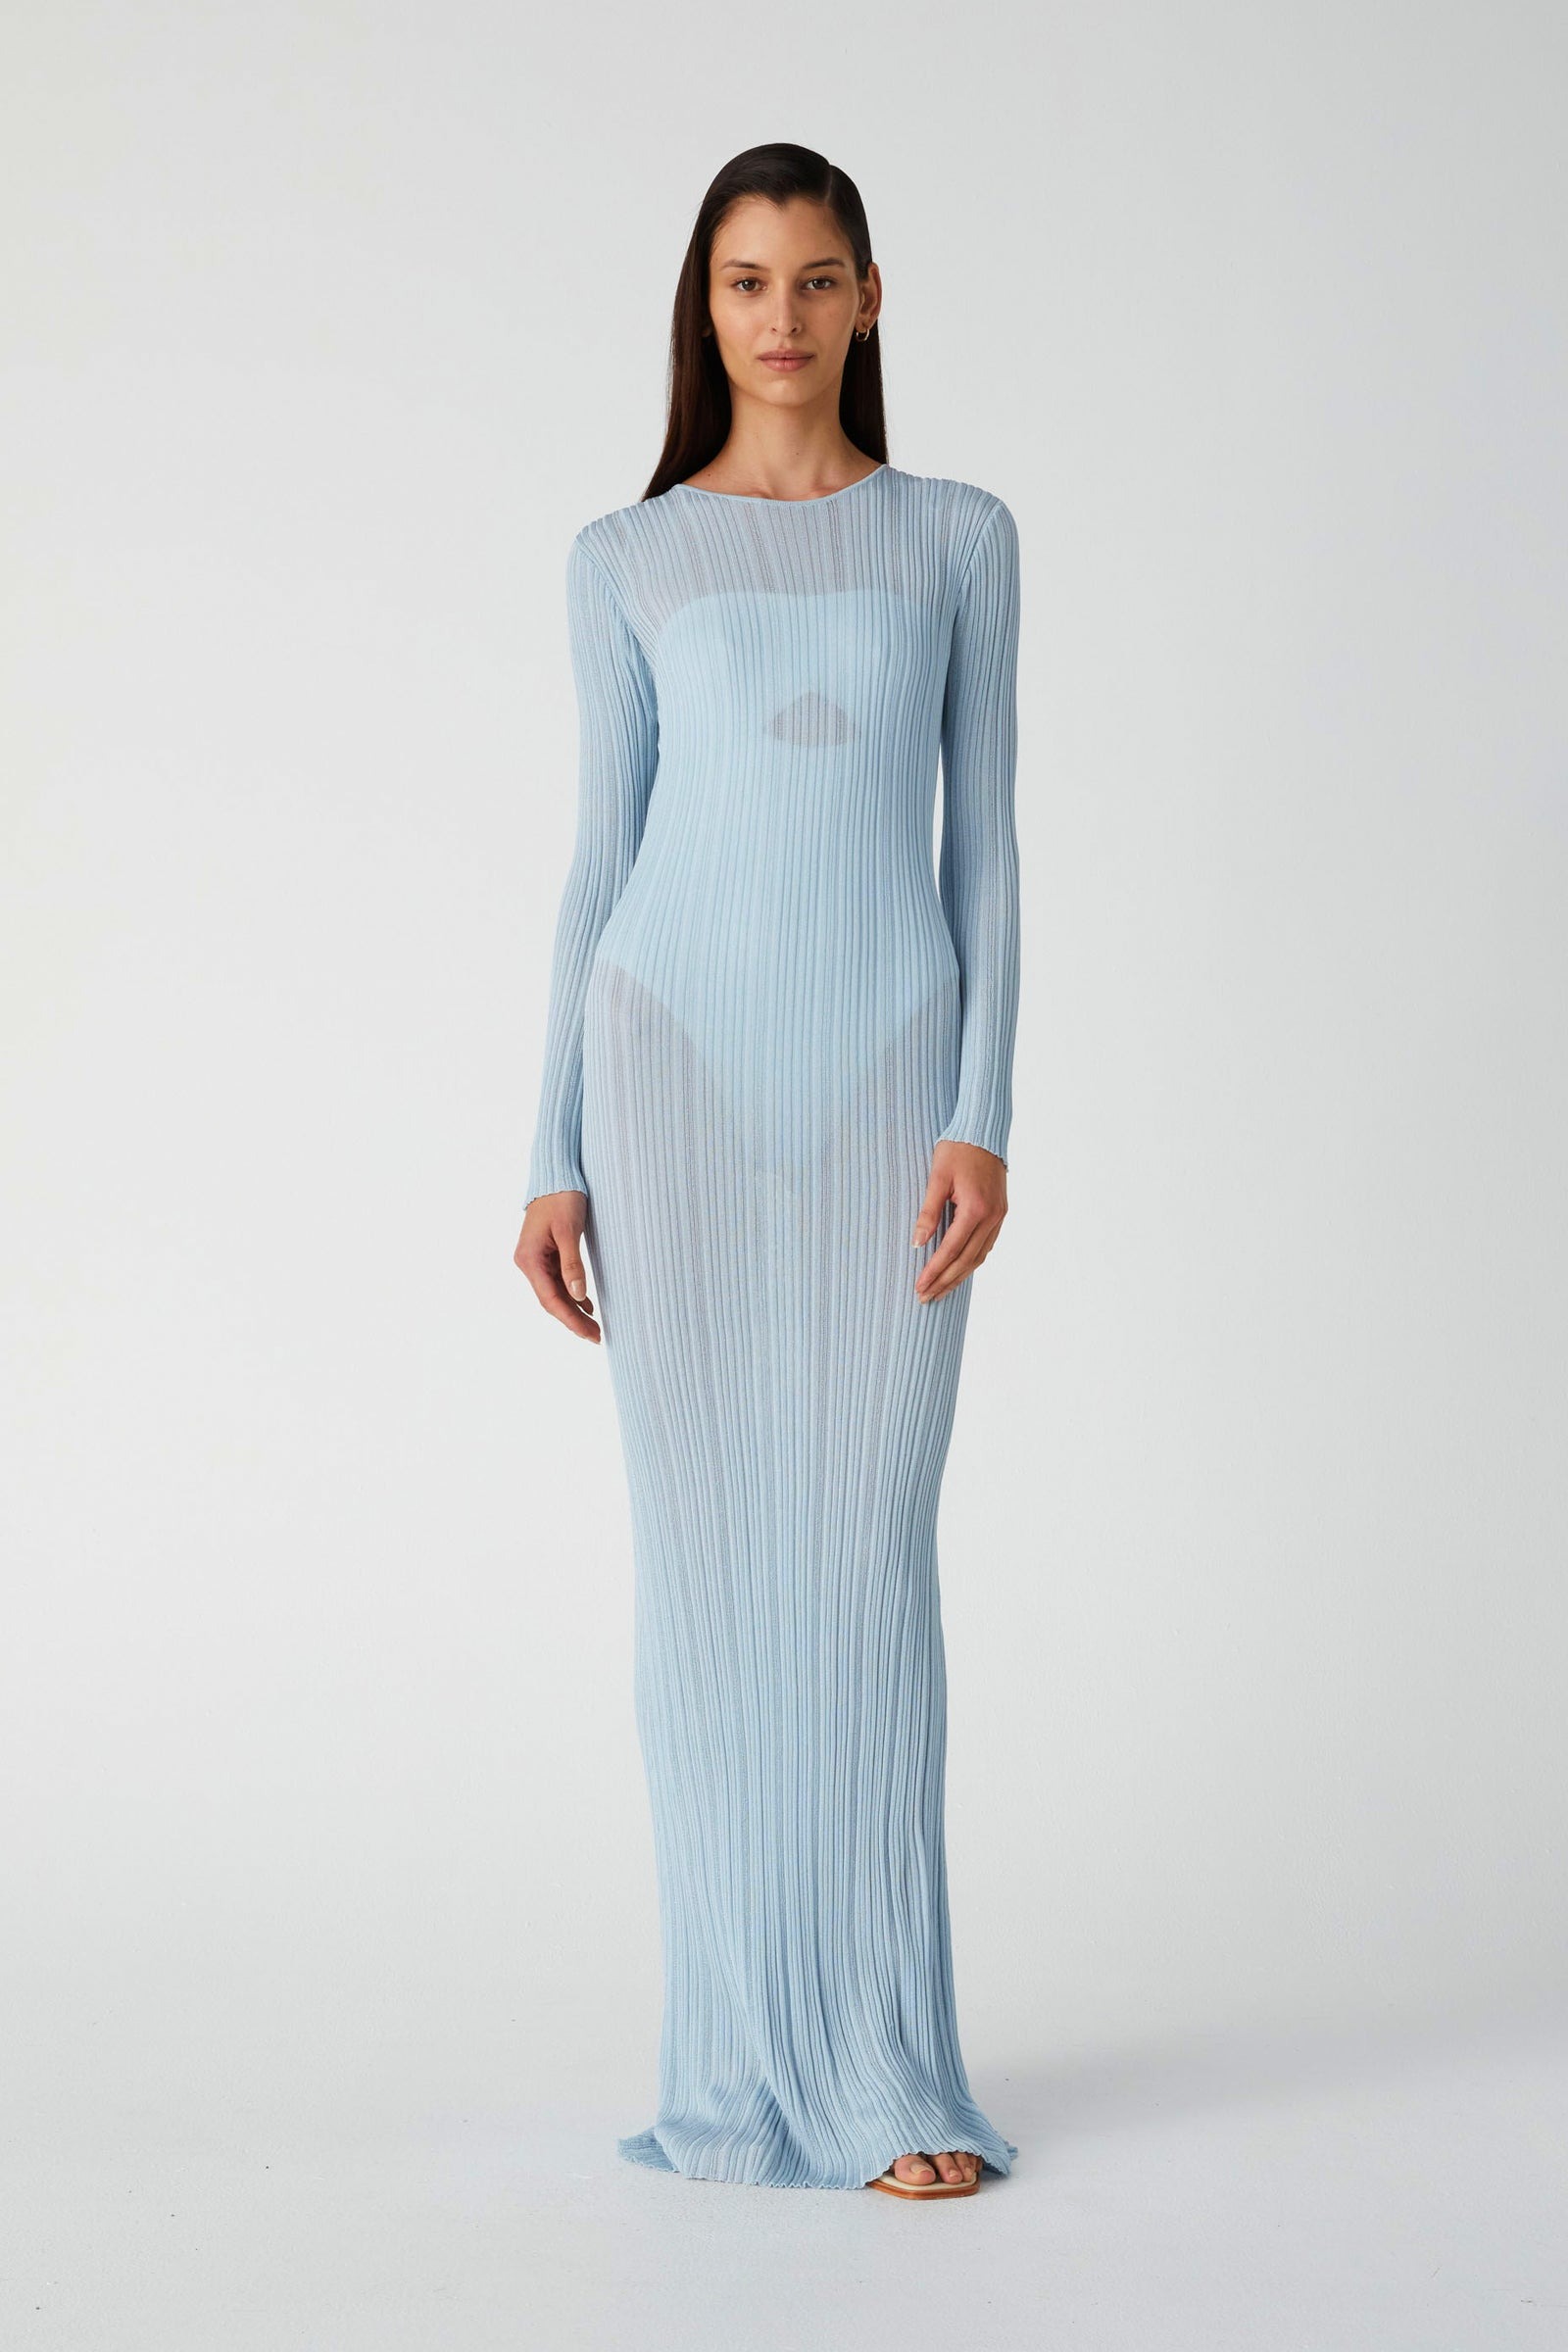 model wearing a maxi dress in light blue